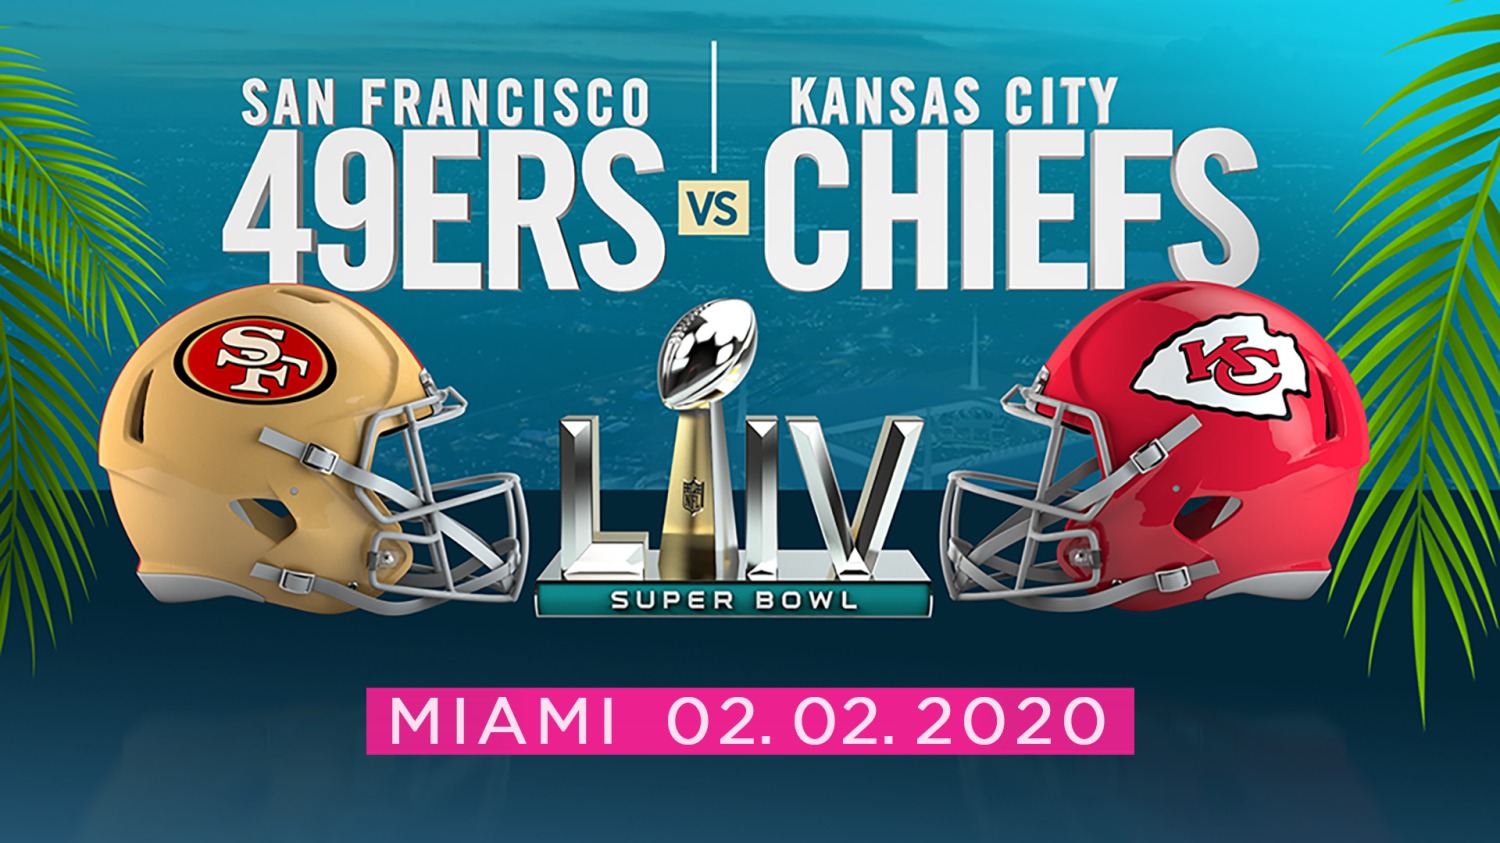 Kansas City Chiefs vs San Francisco 49ers Super Bowl Odds